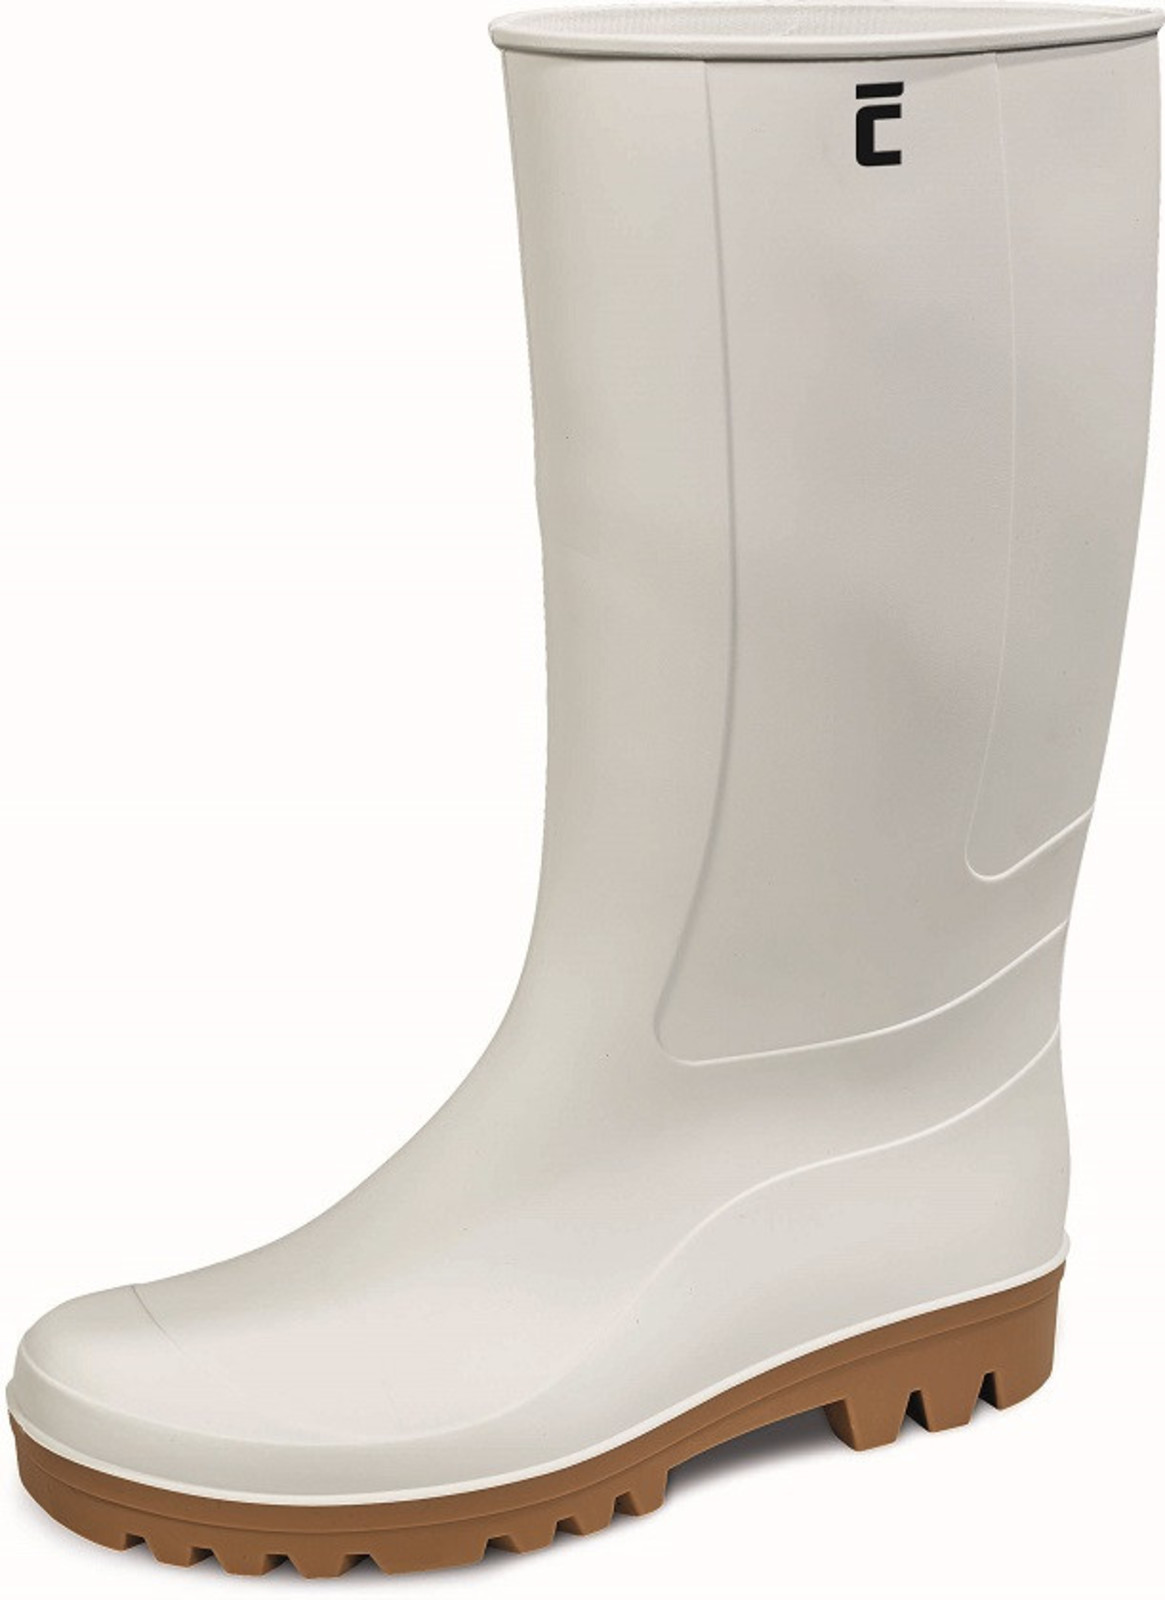 Gumáky Boots BC Food O4  - veľkosť: 45, farba: biela